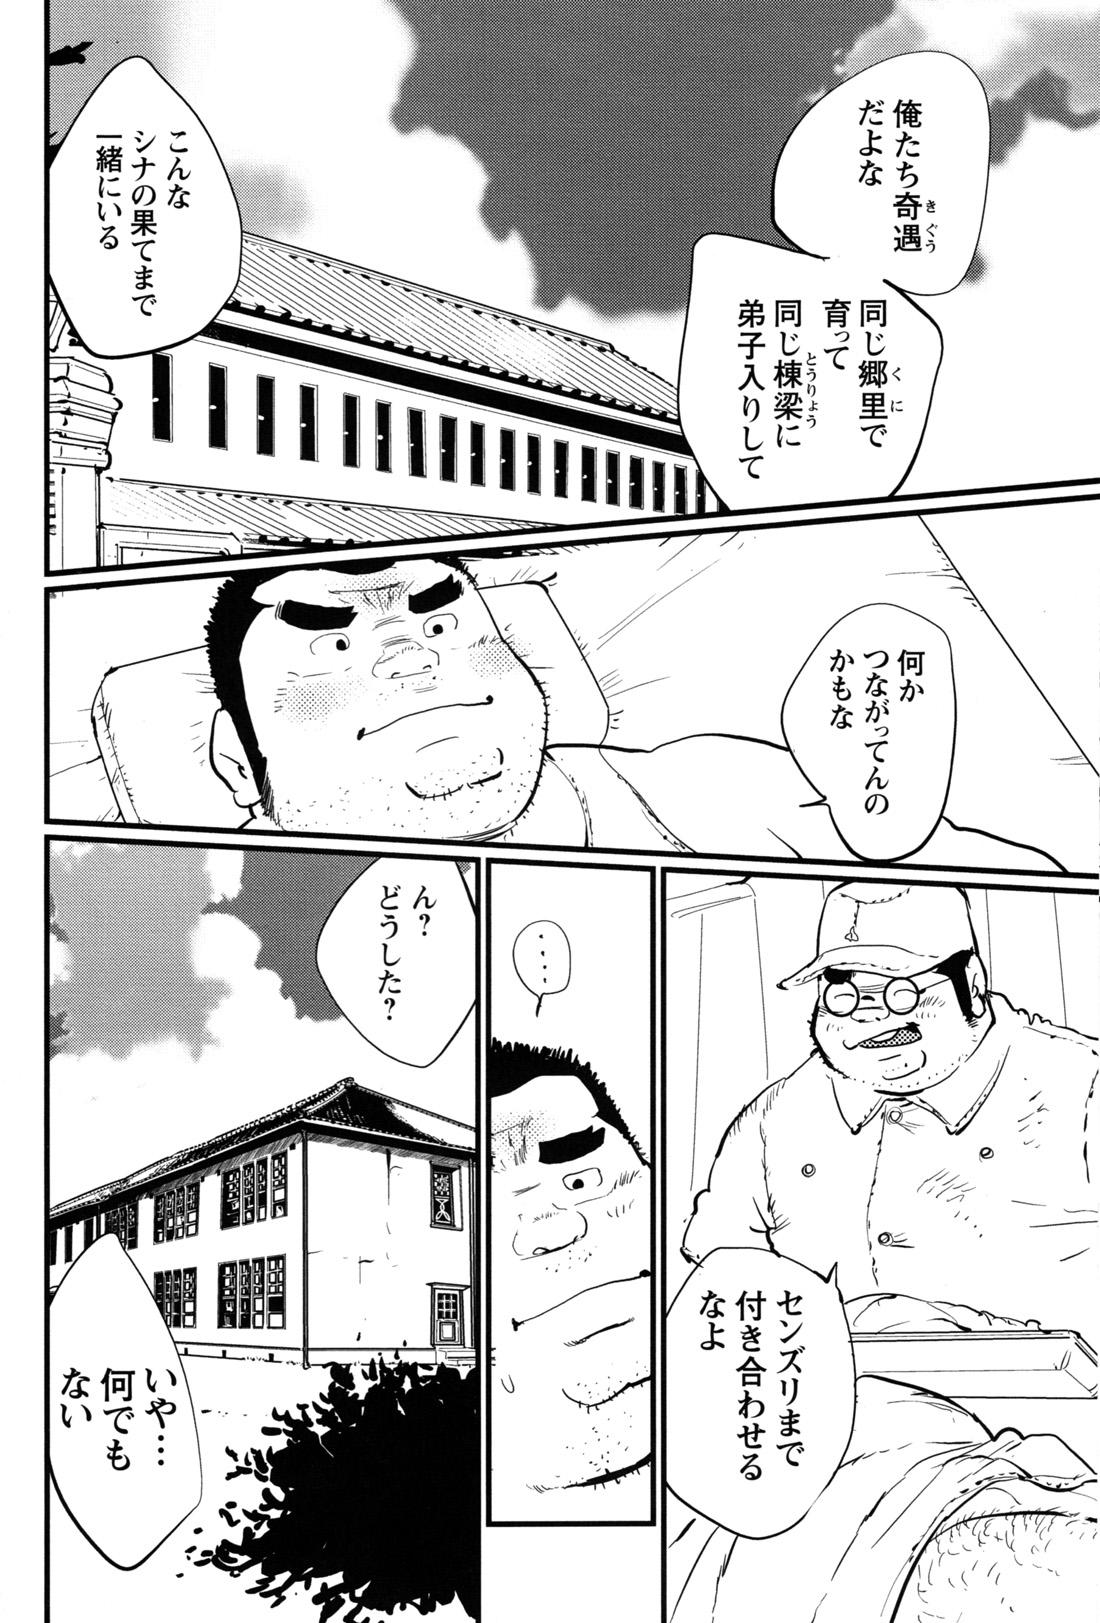 Comic G-men Gaho No.12 Aibou 28